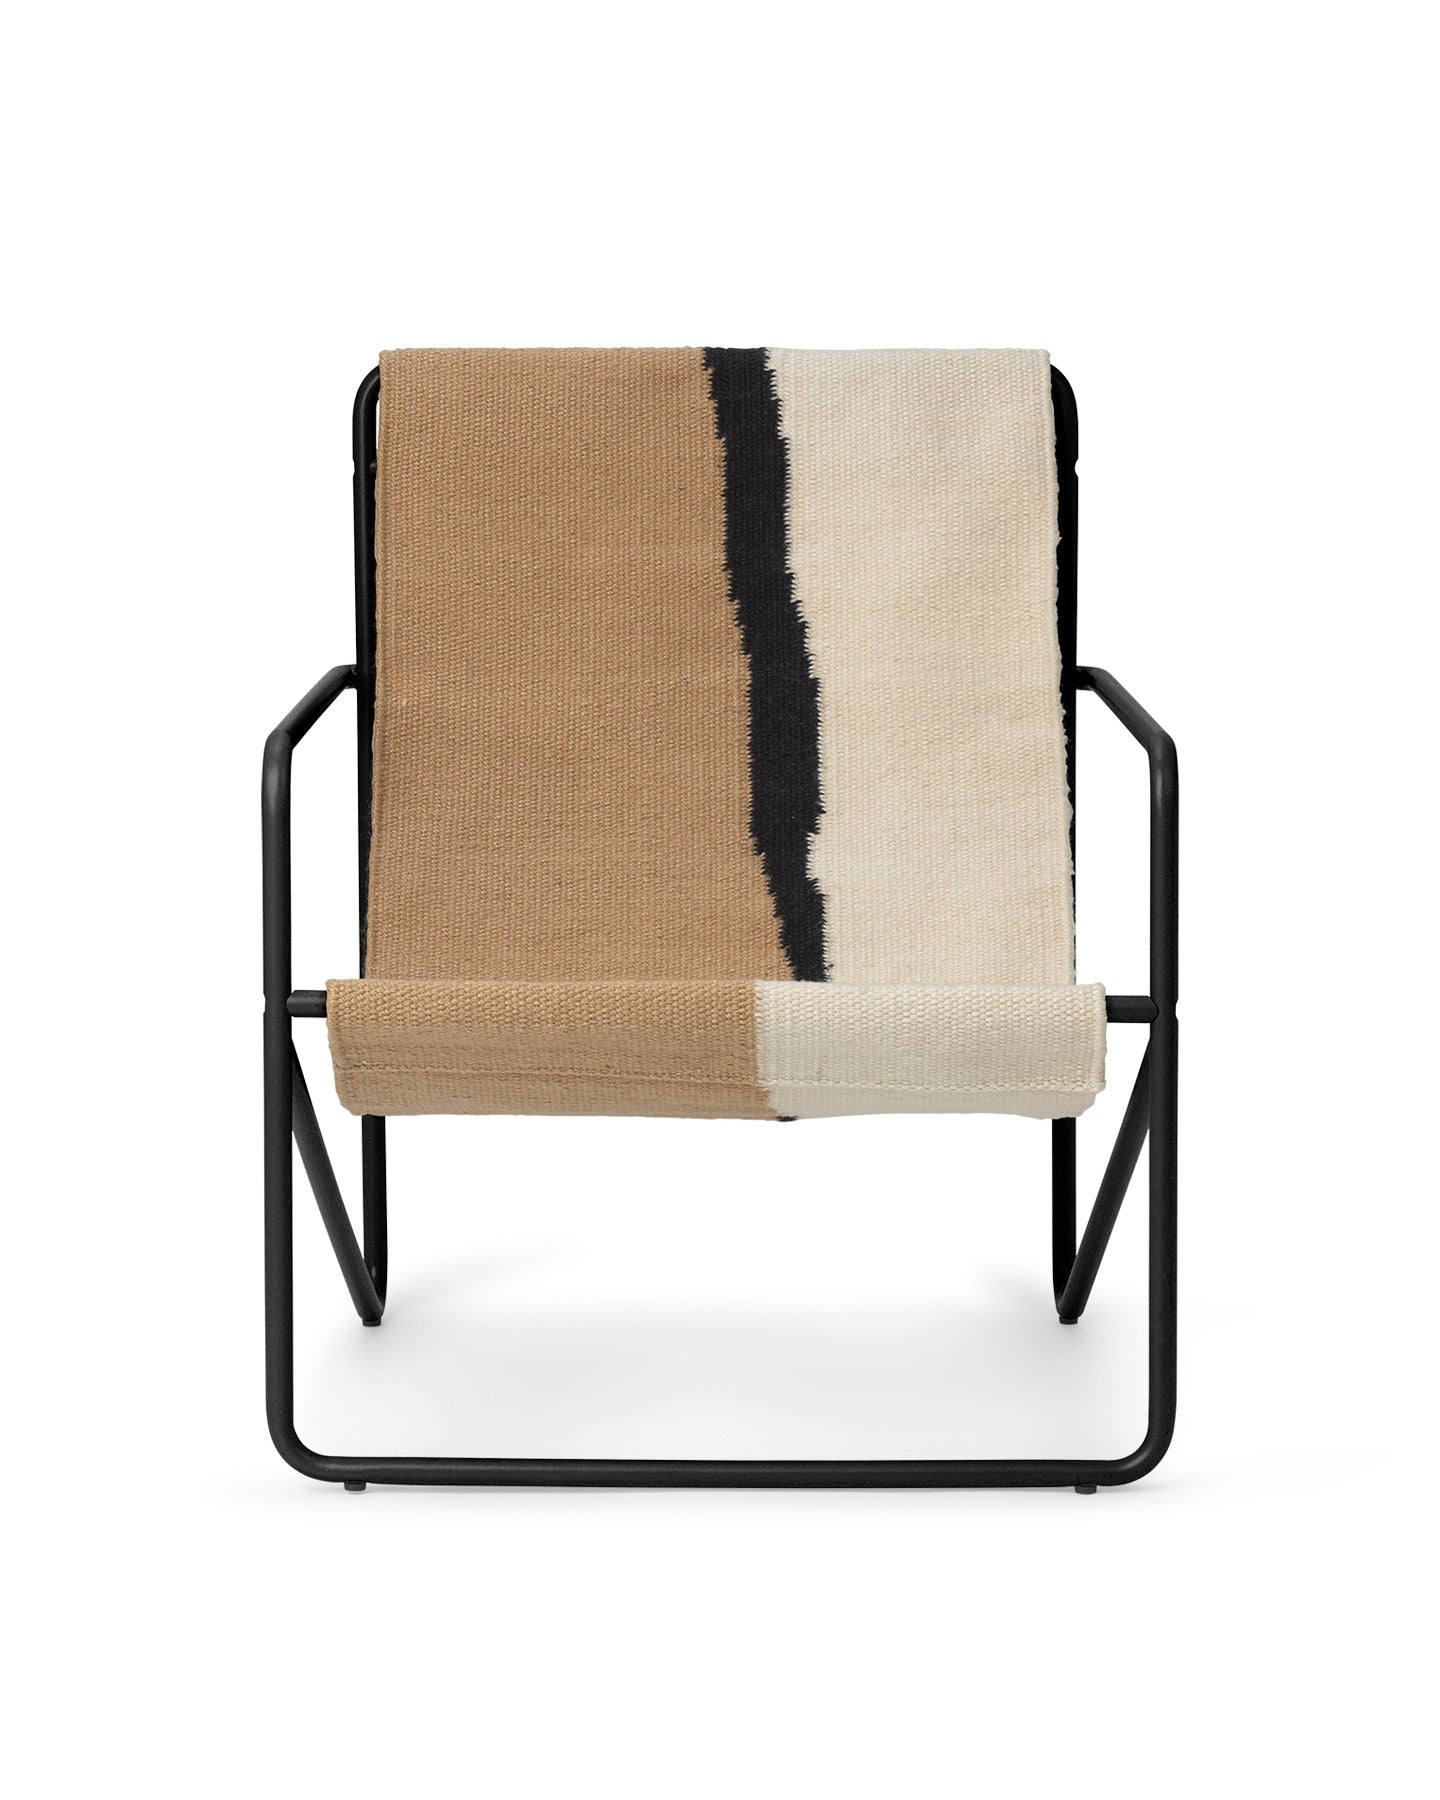 ferm LIVING - DESERT Lounge Chair - black/soil